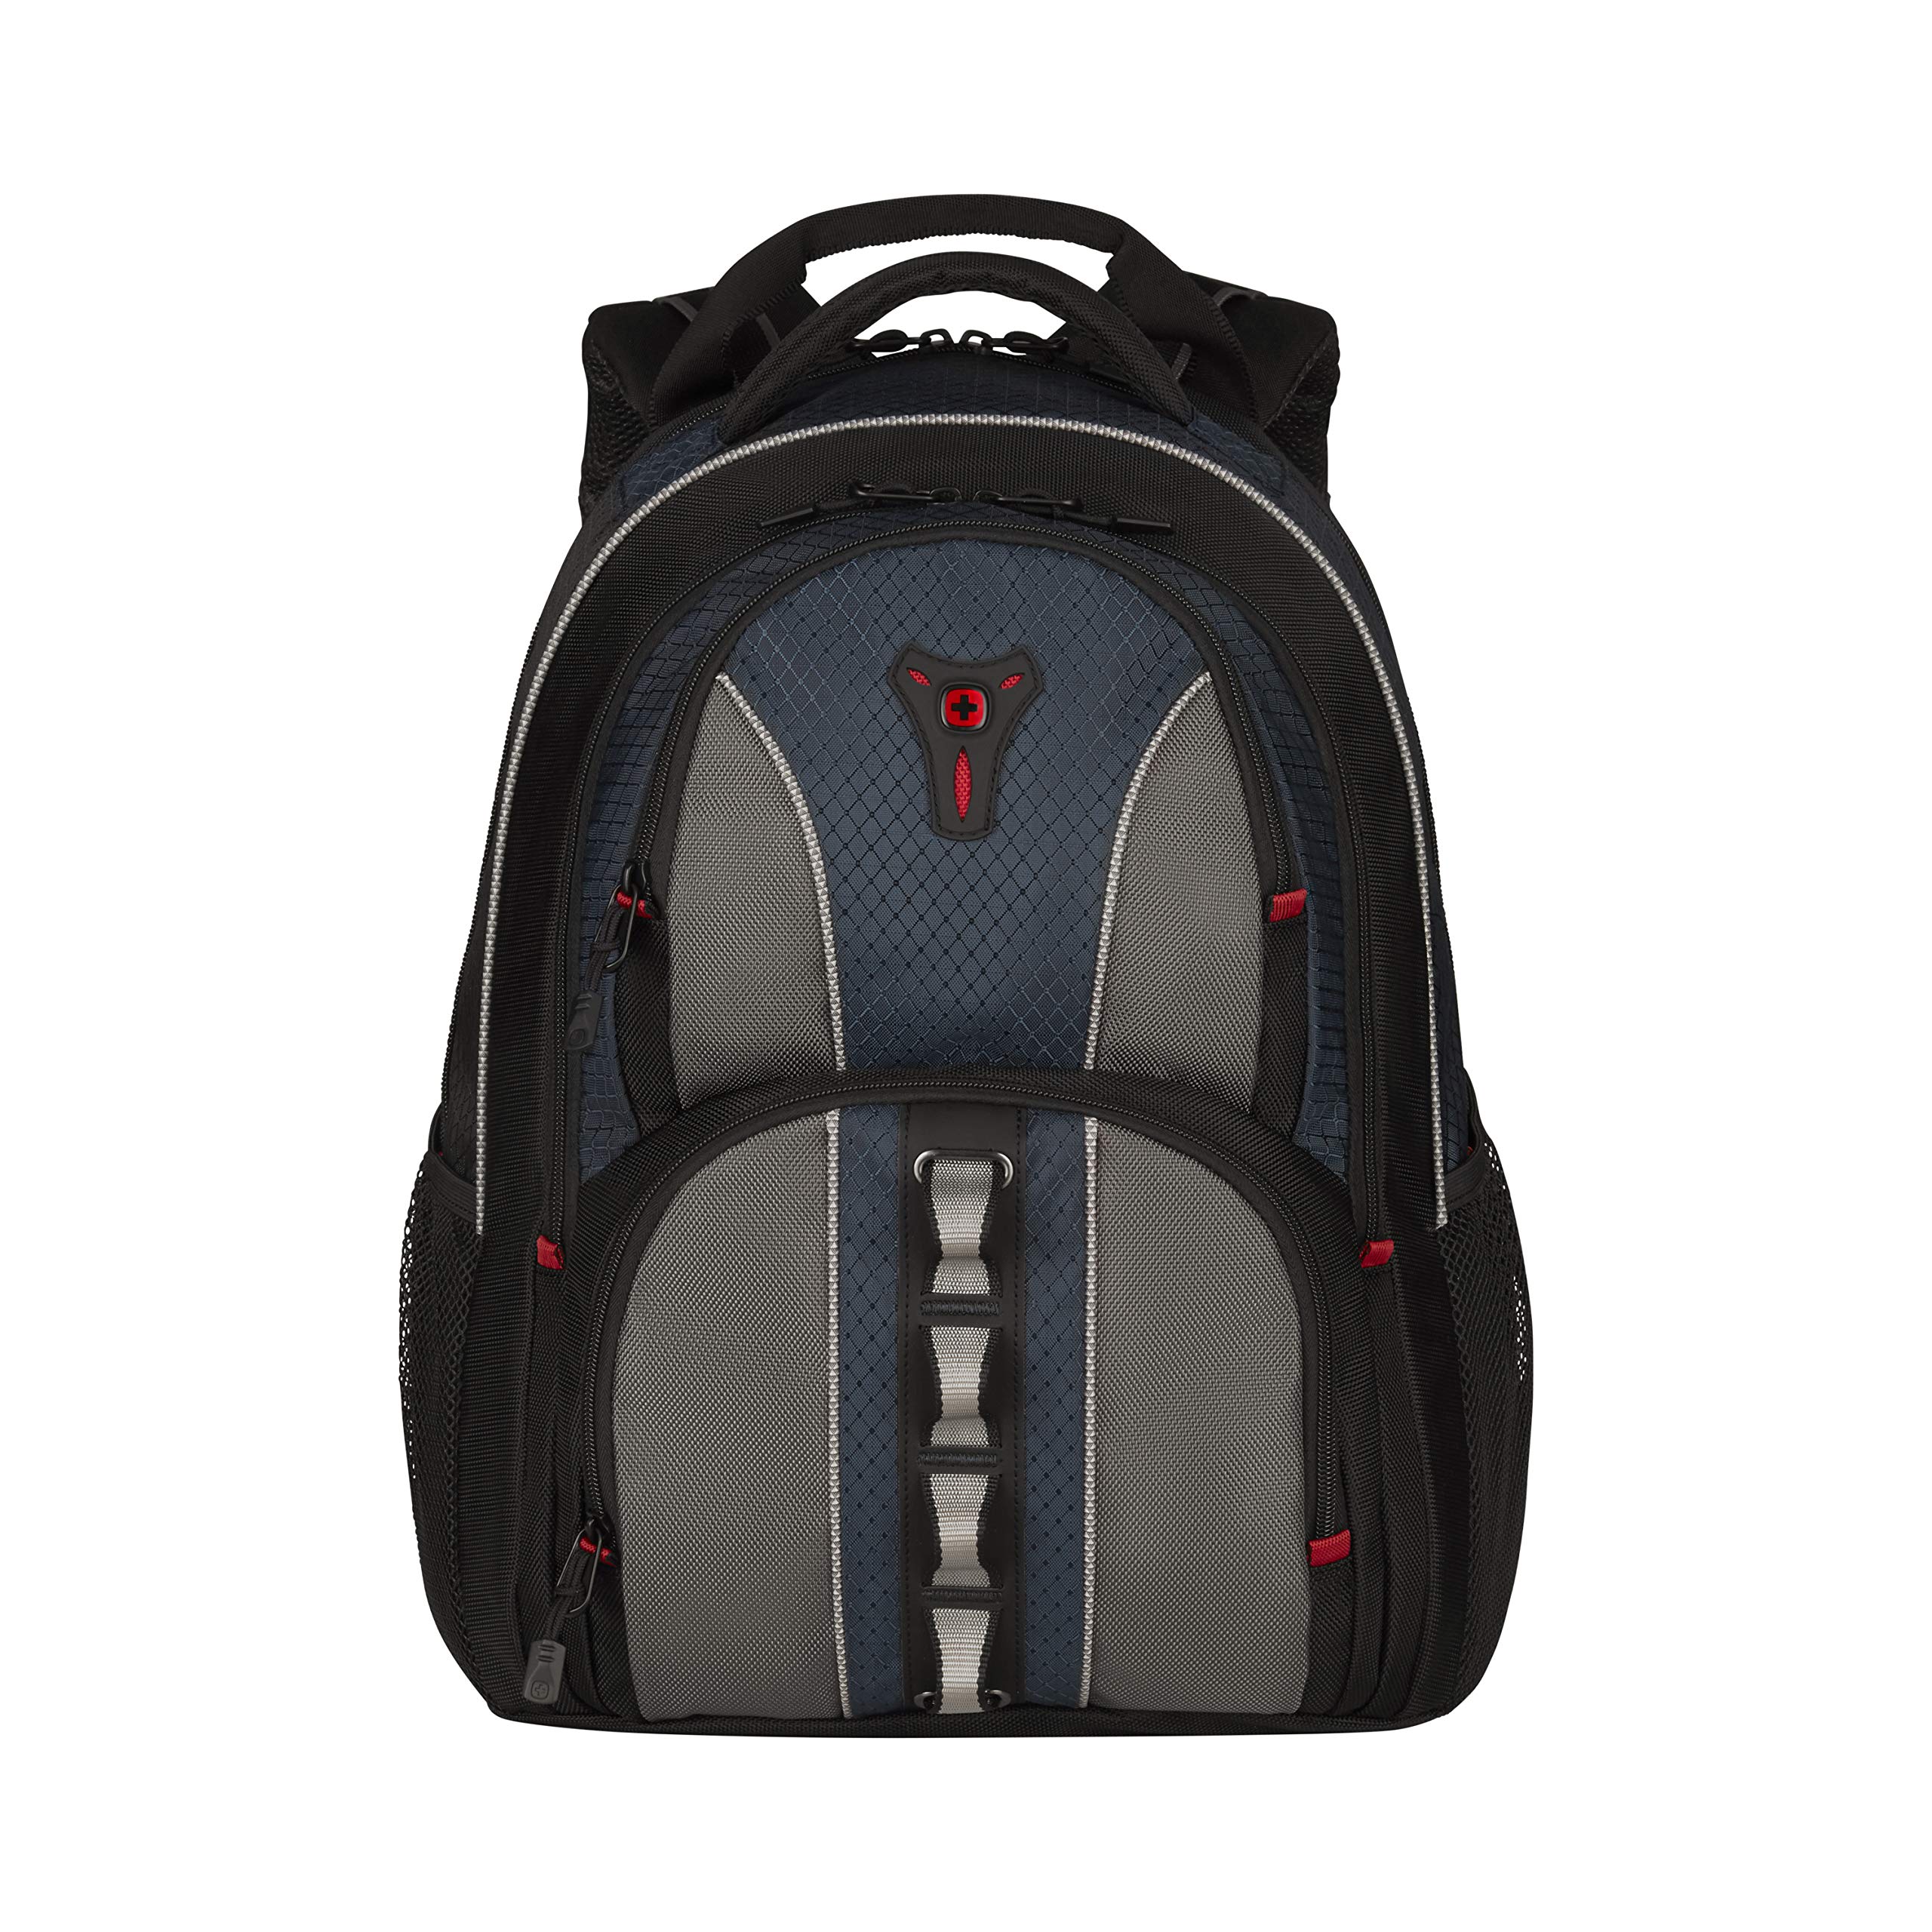 Wenger Cobalt Laptop Backpack, Fits 16 Inch Laptop, Men's and Women's, Black/Grey/Blue